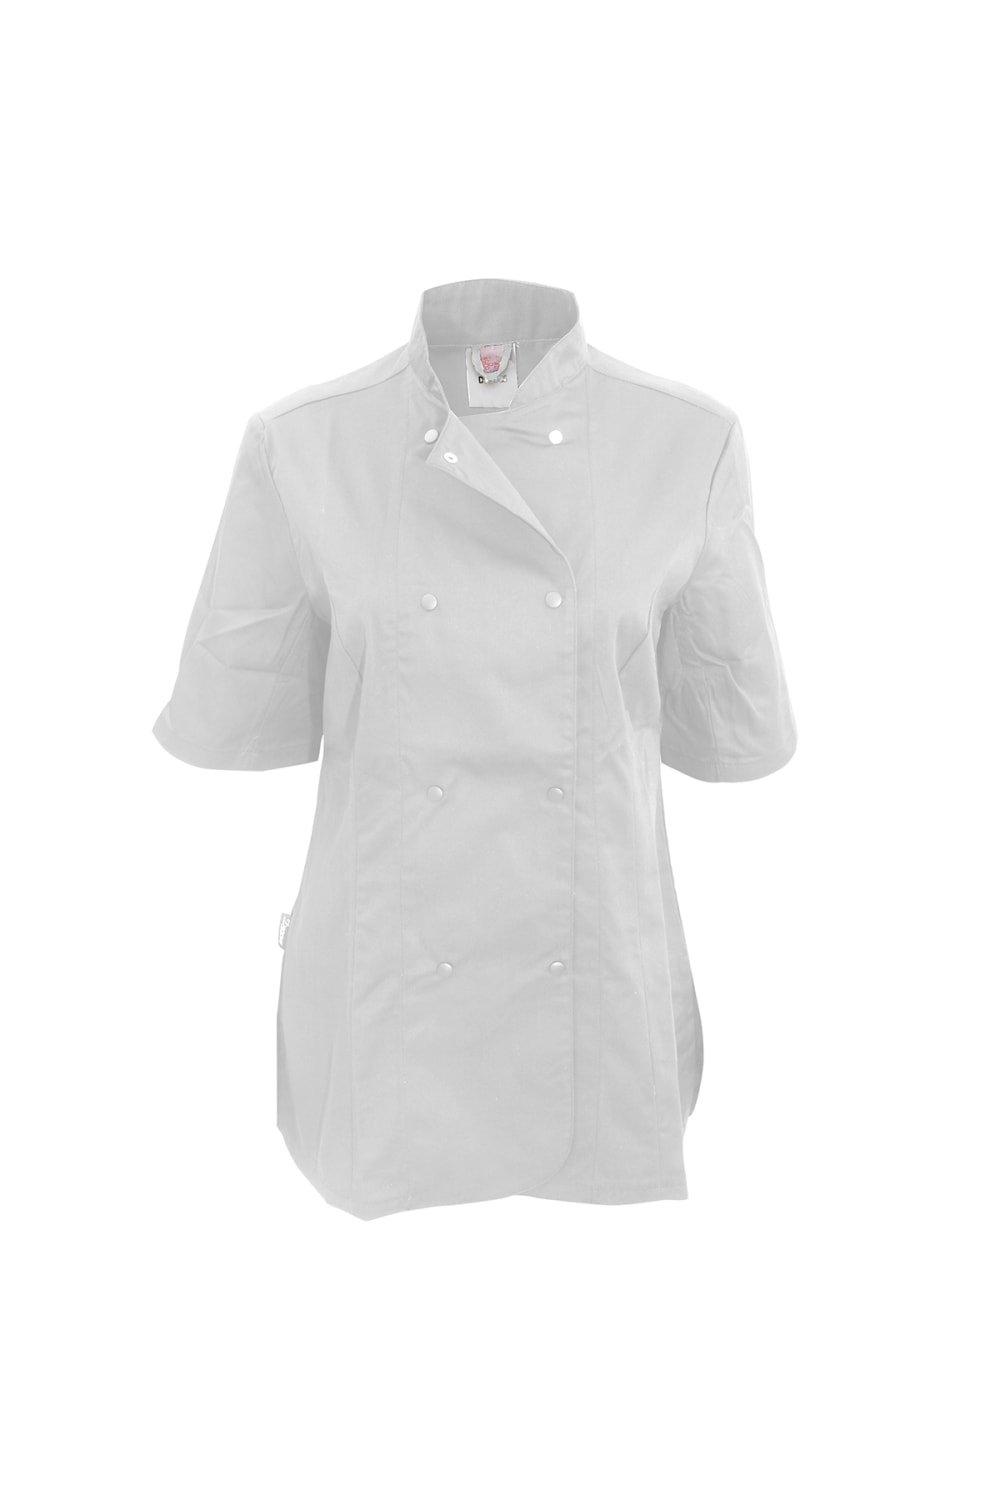 Приталенная куртка шеф-повара с короткими рукавами (2 шт.) Dennys, белый